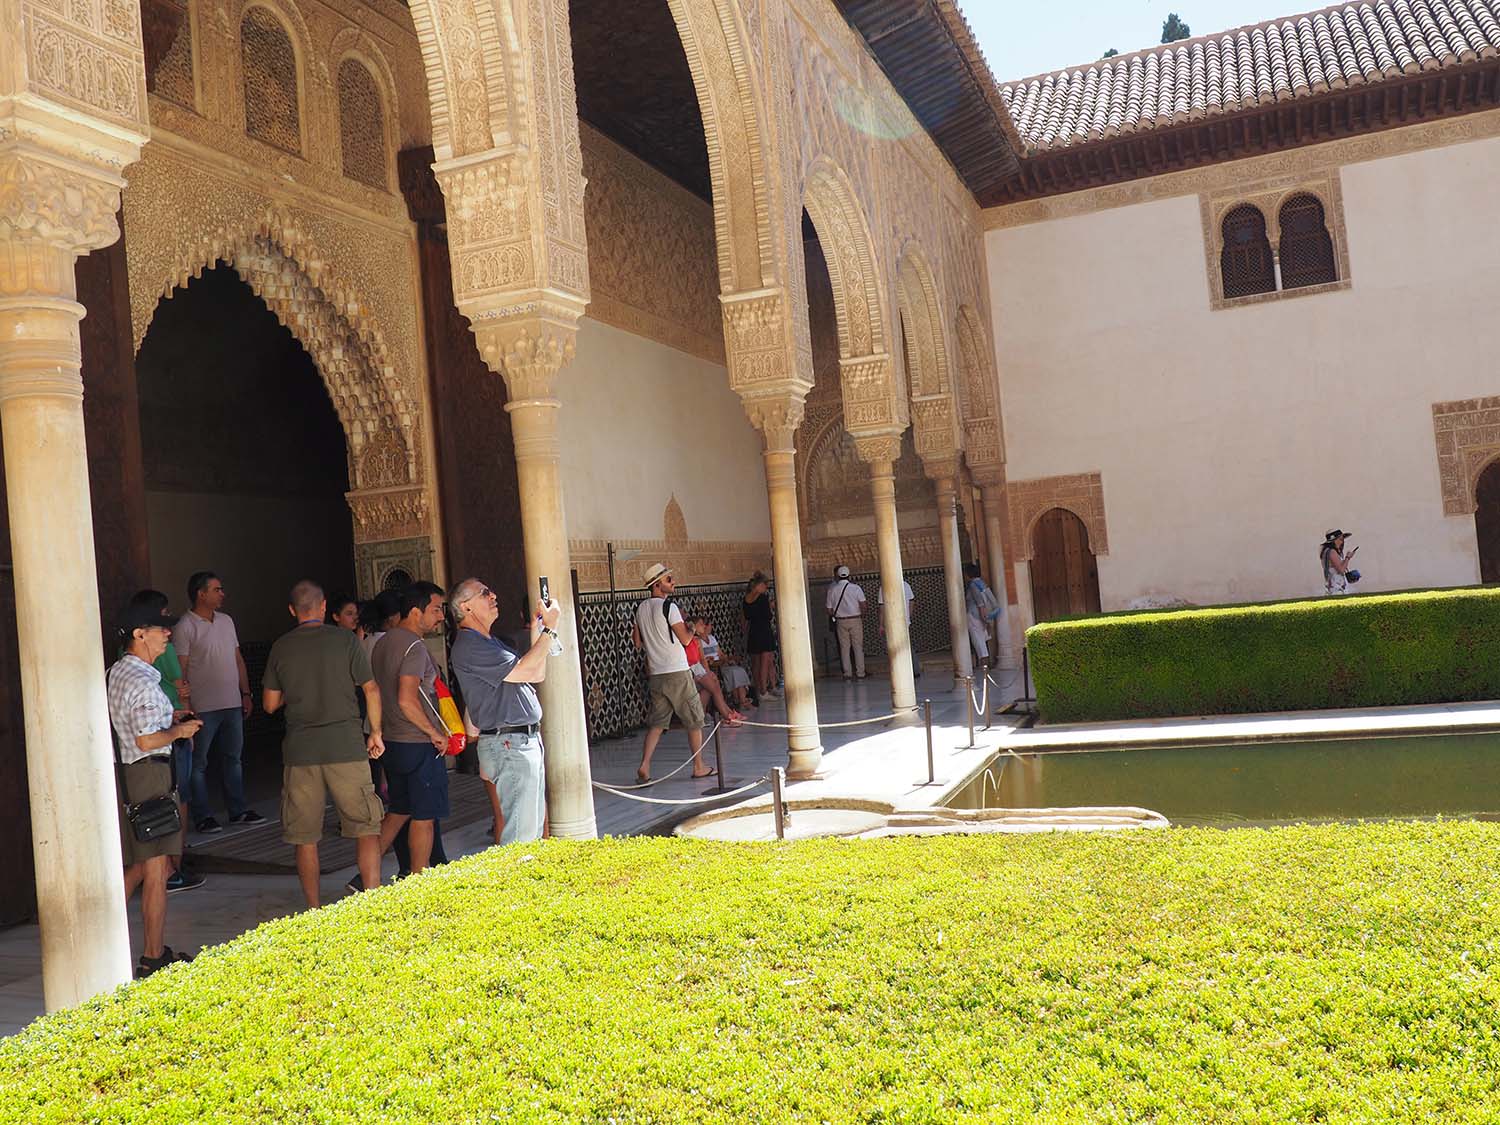 Patio de los Arrayanes, Alhambra (MEGT)